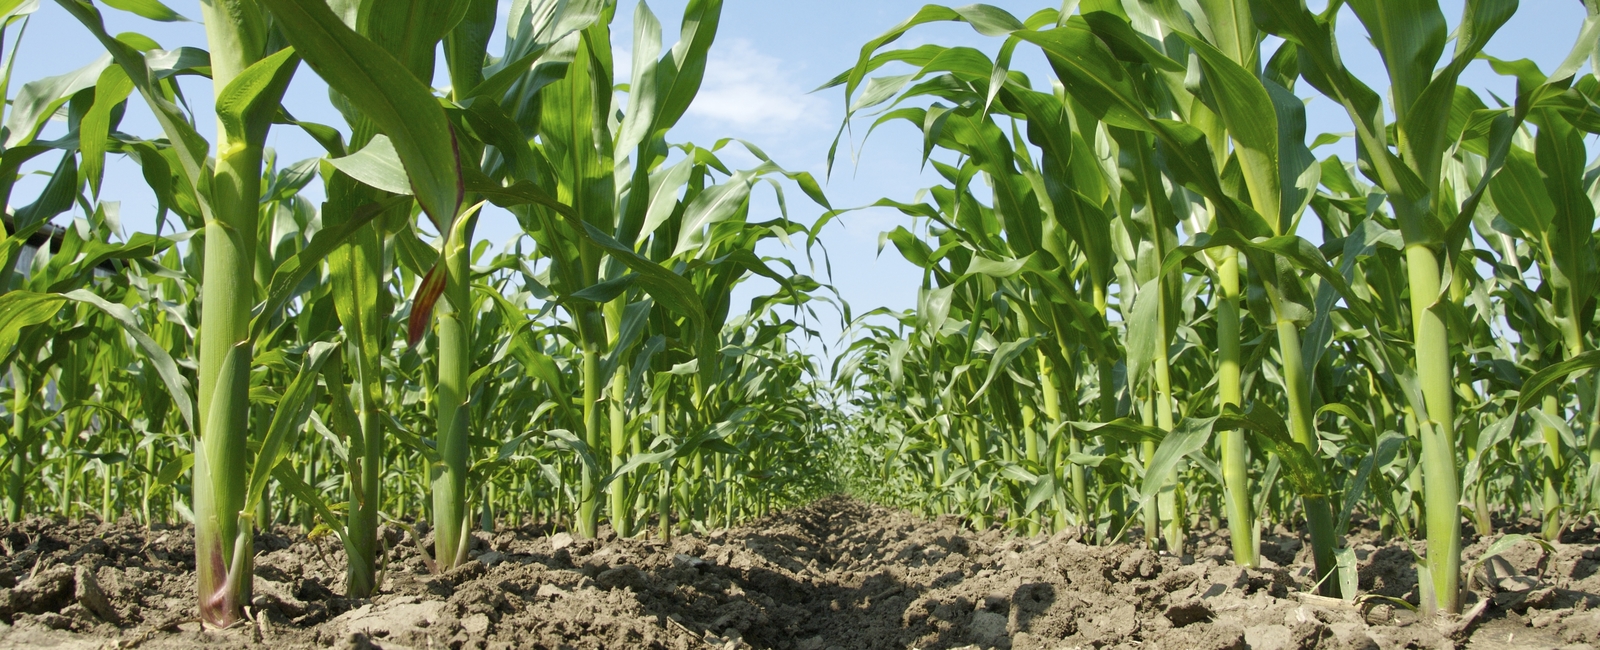 Podstawy agronomiczne uprawy kukurydzy